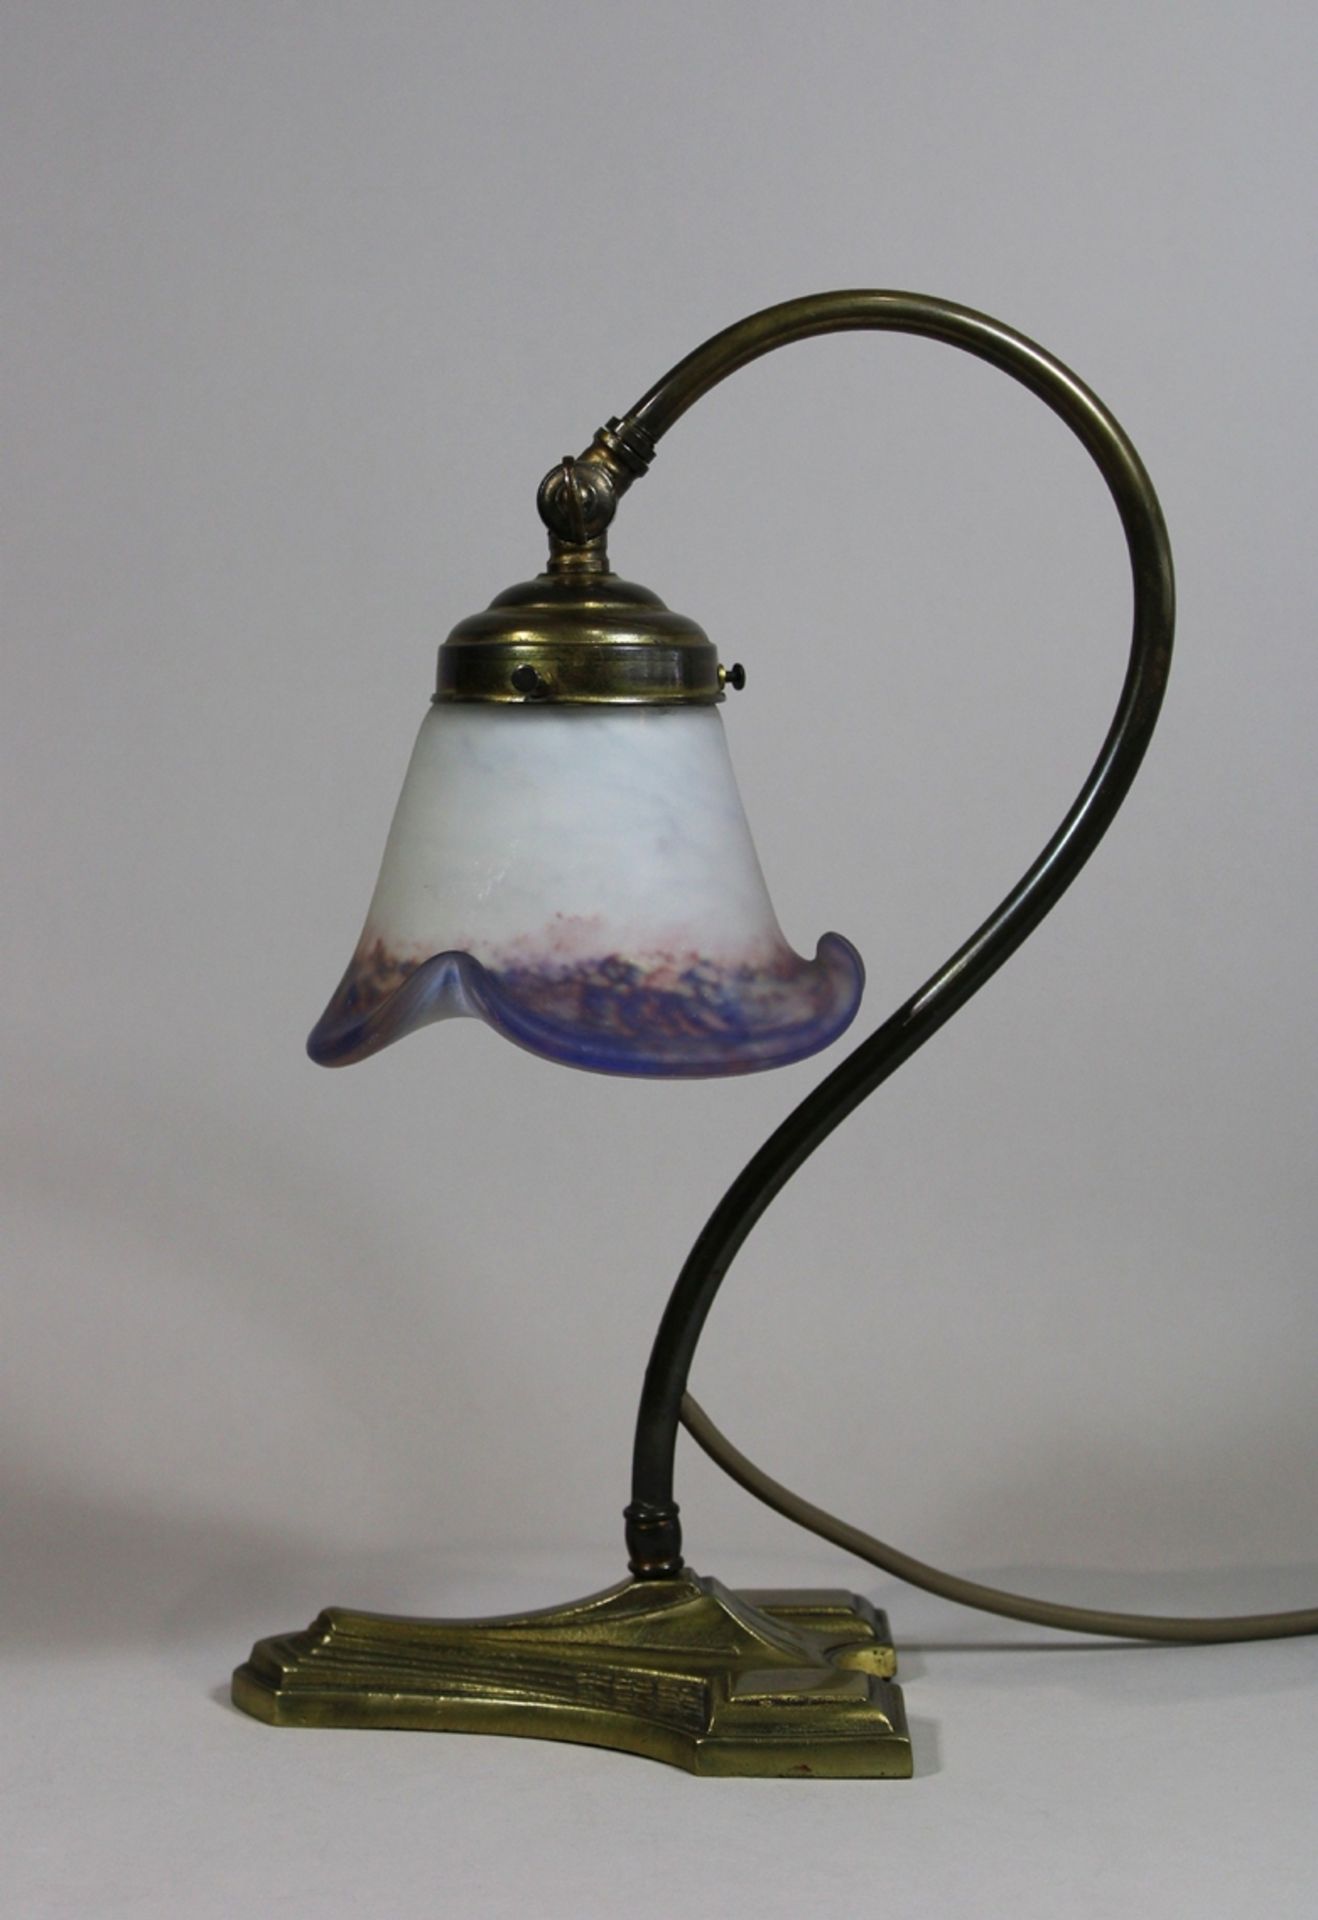 Tischlampe, Jugendstil, Frankreich, 19. Jh., Messing, mit Glashaube, signiert Mansau, H.: 31,5 cm.